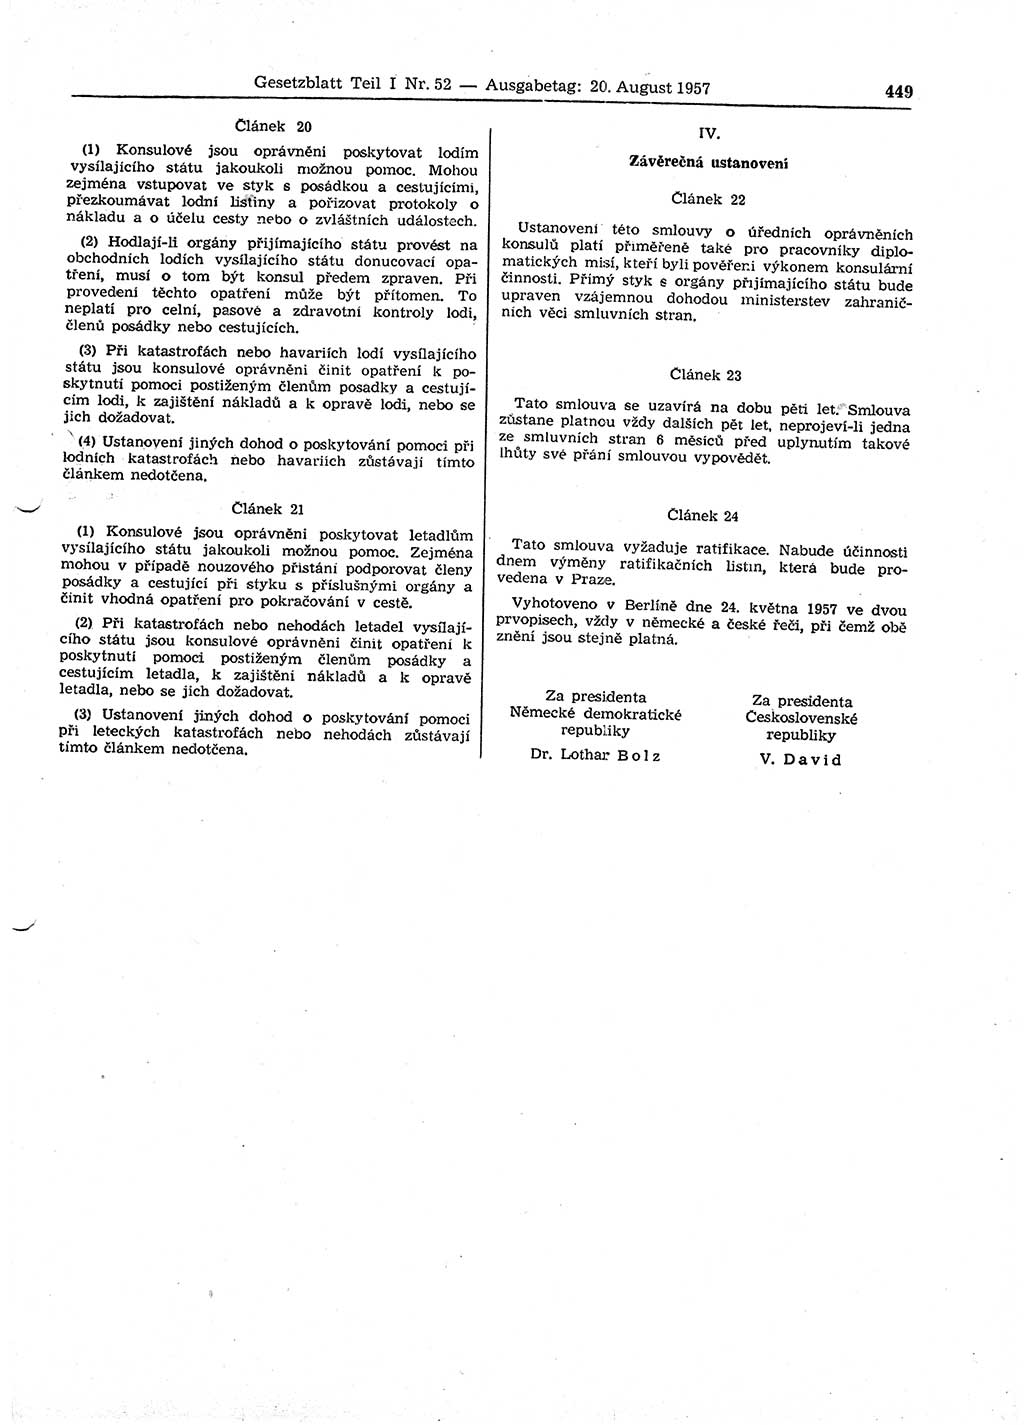 Gesetzblatt (GBl.) der Deutschen Demokratischen Republik (DDR) Teil Ⅰ 1957, Seite 449 (GBl. DDR Ⅰ 1957, S. 449)